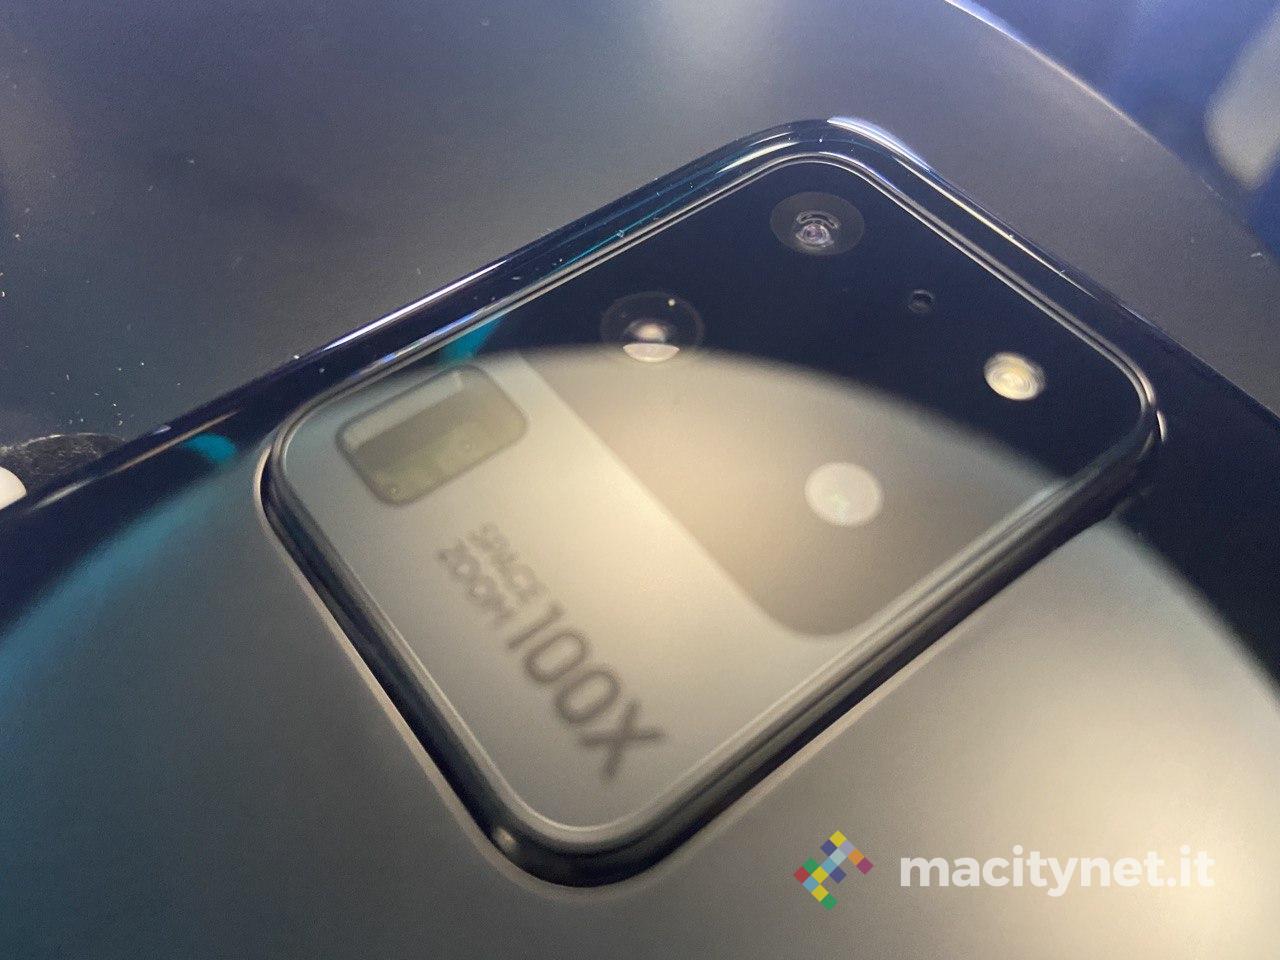 Samsung Galaxy S20, S20 + e S20 ultra: tutti i dettagli